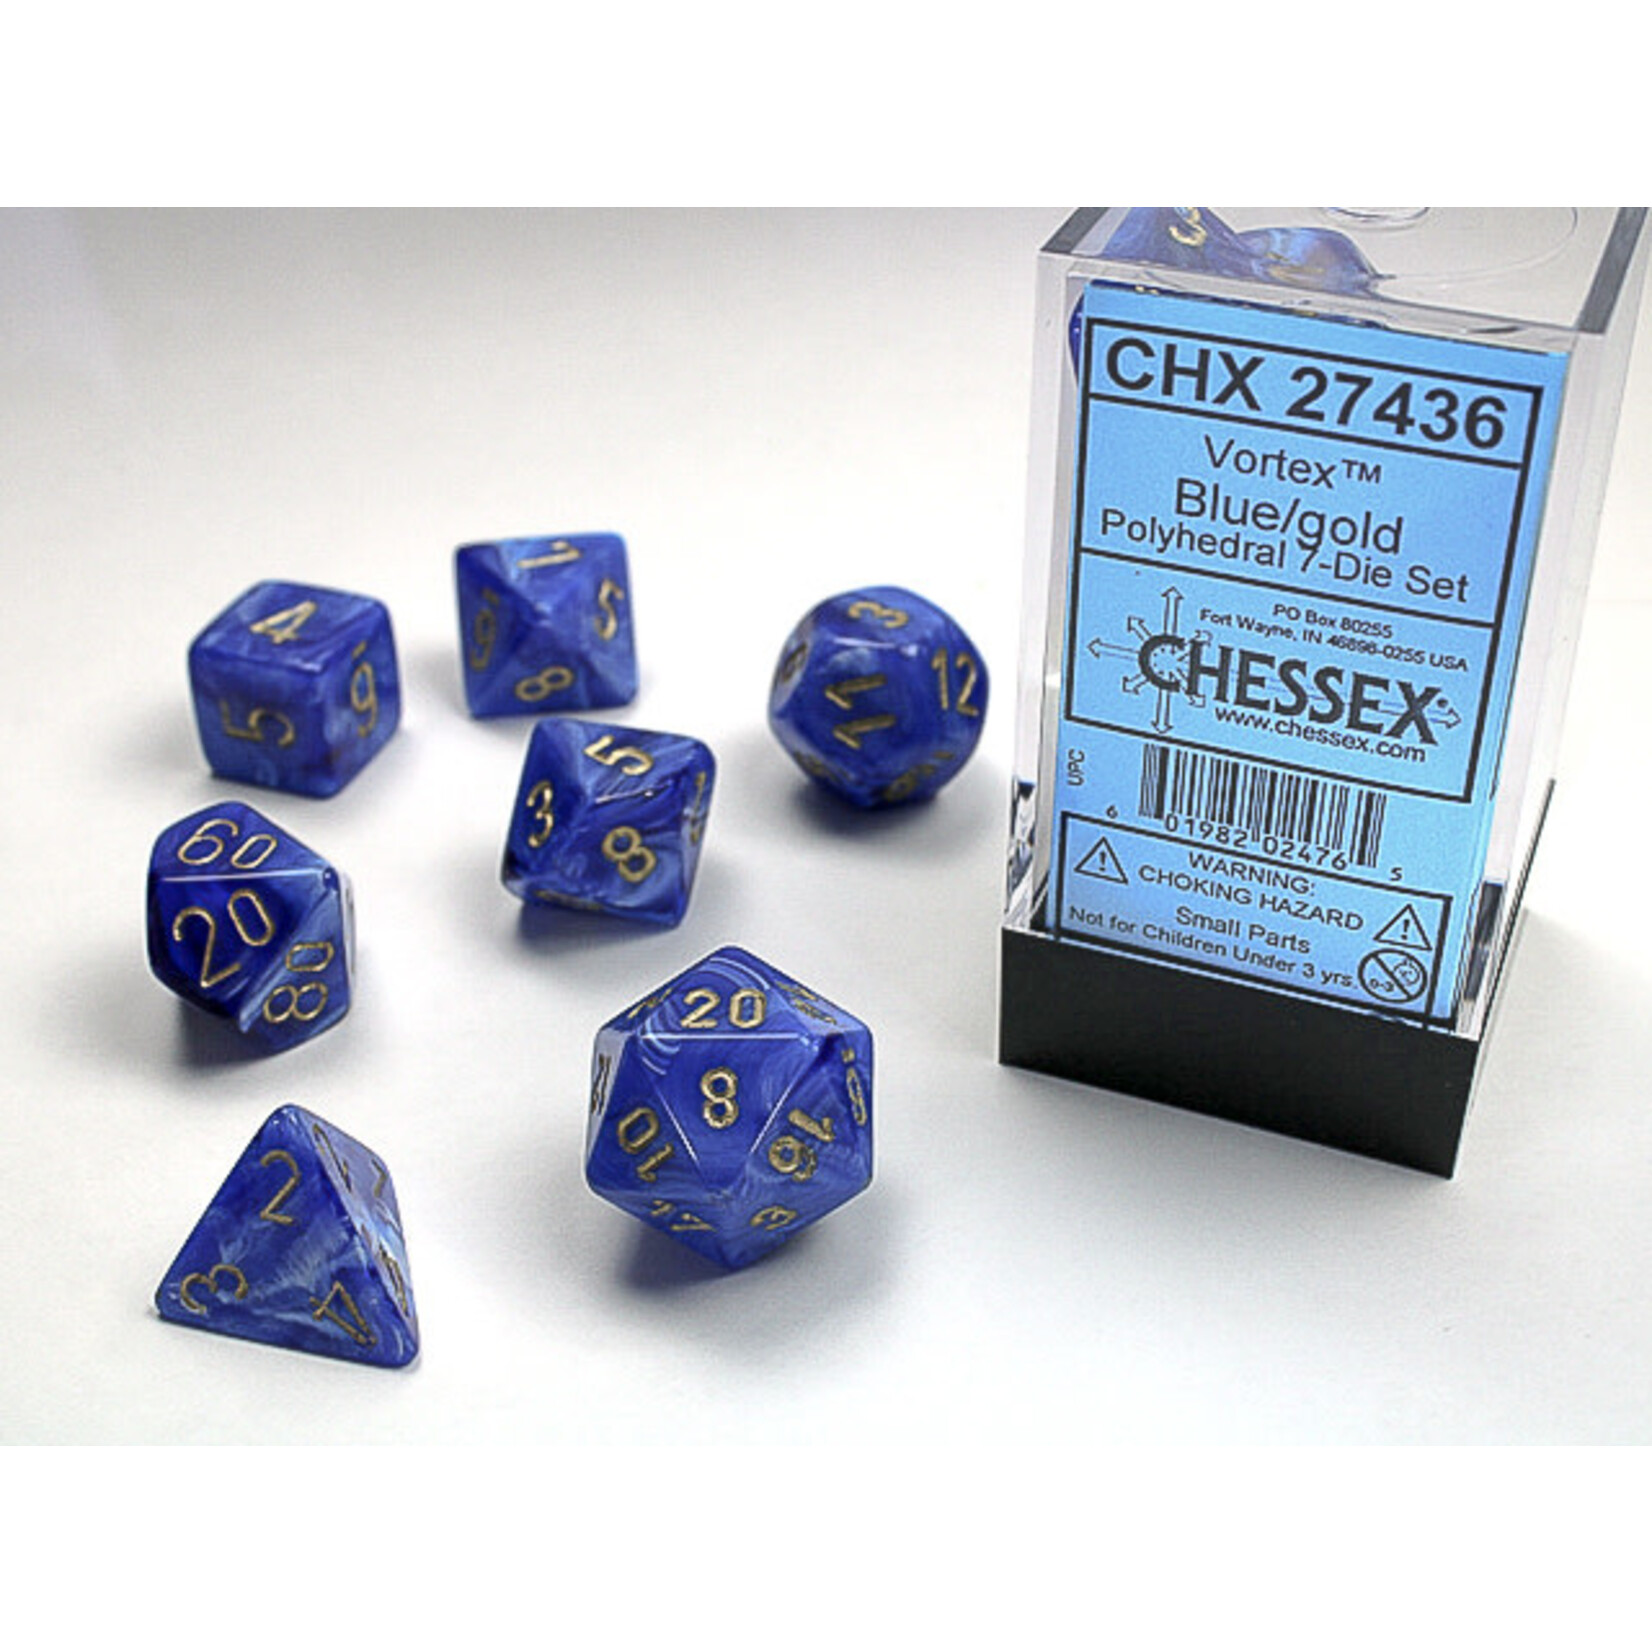 Chessex Dice RPG 27436 7pc Vortex Blue/Gold